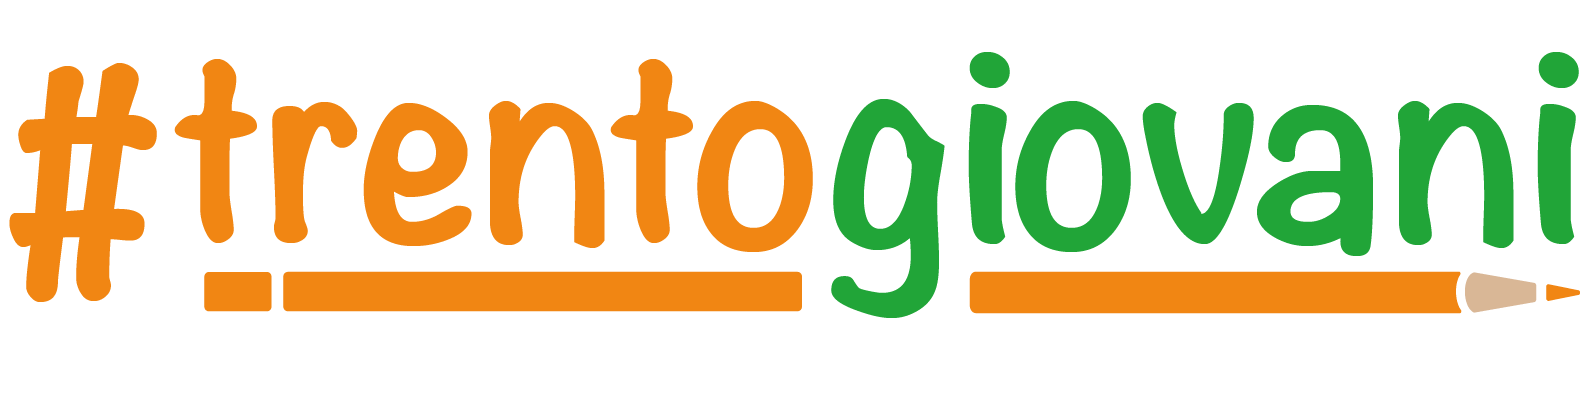 logo TRENTOGIOVANI ORIGINALE O